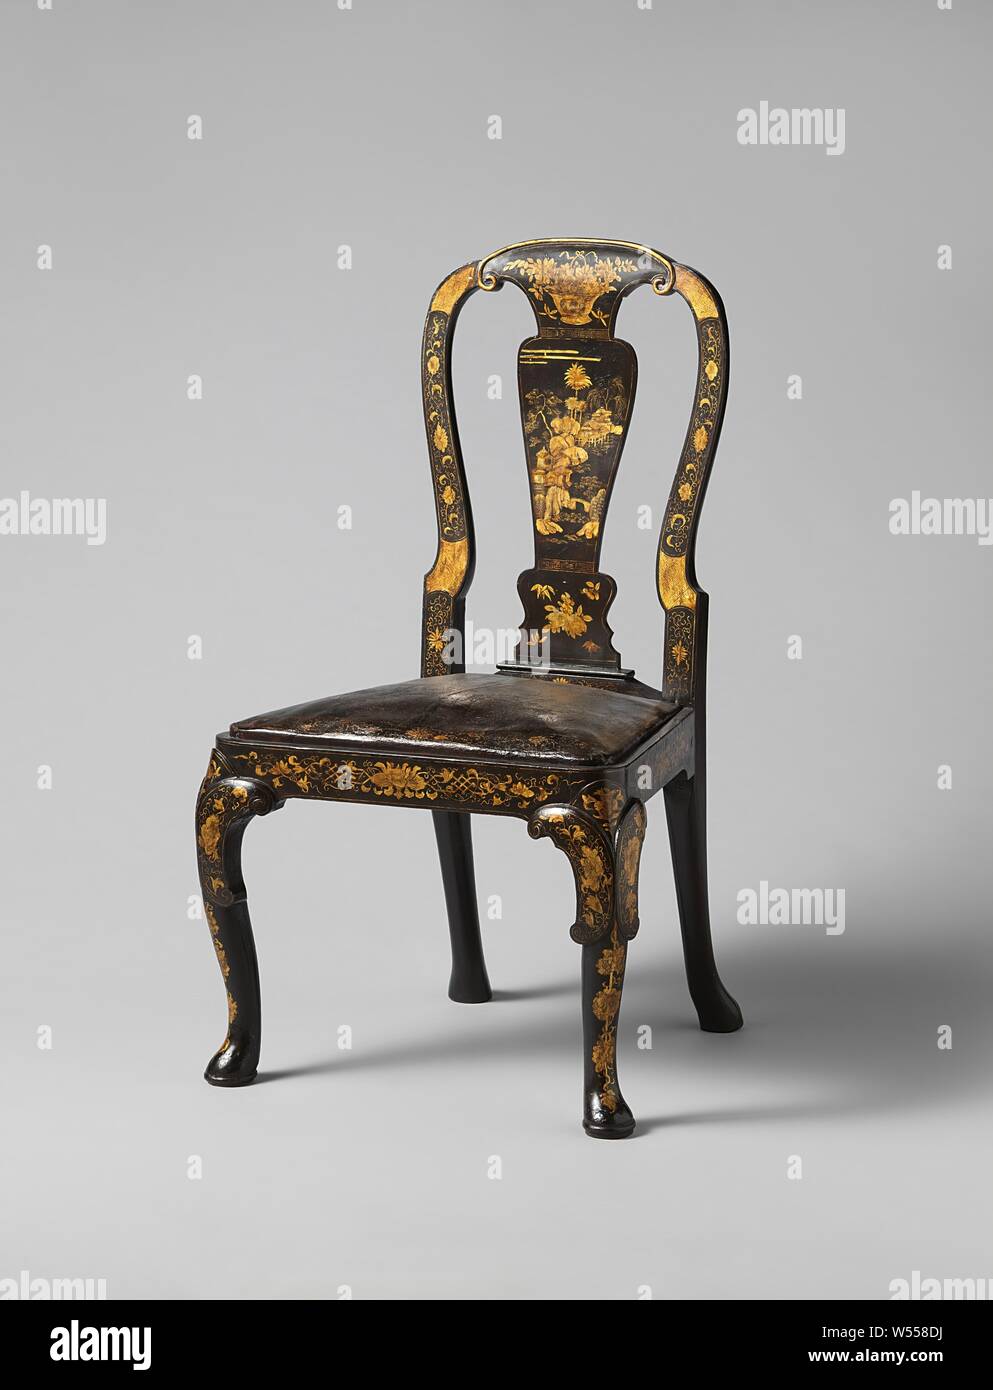 Stuhl aus Buchenholz, mit chinoiseries in Gold auf schwarzem Hintergrund gemalt, Stuhl aus Buchenholz, mit chinoiseries in Gold auf schwarzem Hintergrund gemalt. Hohe durchbrochenen Rückenlehne, die vorderen Beine verbogen sind und am Ende in Hufform. Lose Sitz aus Leder, auch mit Gold ornament verziert., anonym, England, 1700-1725, Holz (Pflanzen), Buche (Holz), teak (Holz), Leder, H 105,0 cm × w 57,0 cm × d 56,0 cm h 46 cm x W 50 cm x d 39 cm w 8 kg Stockfoto